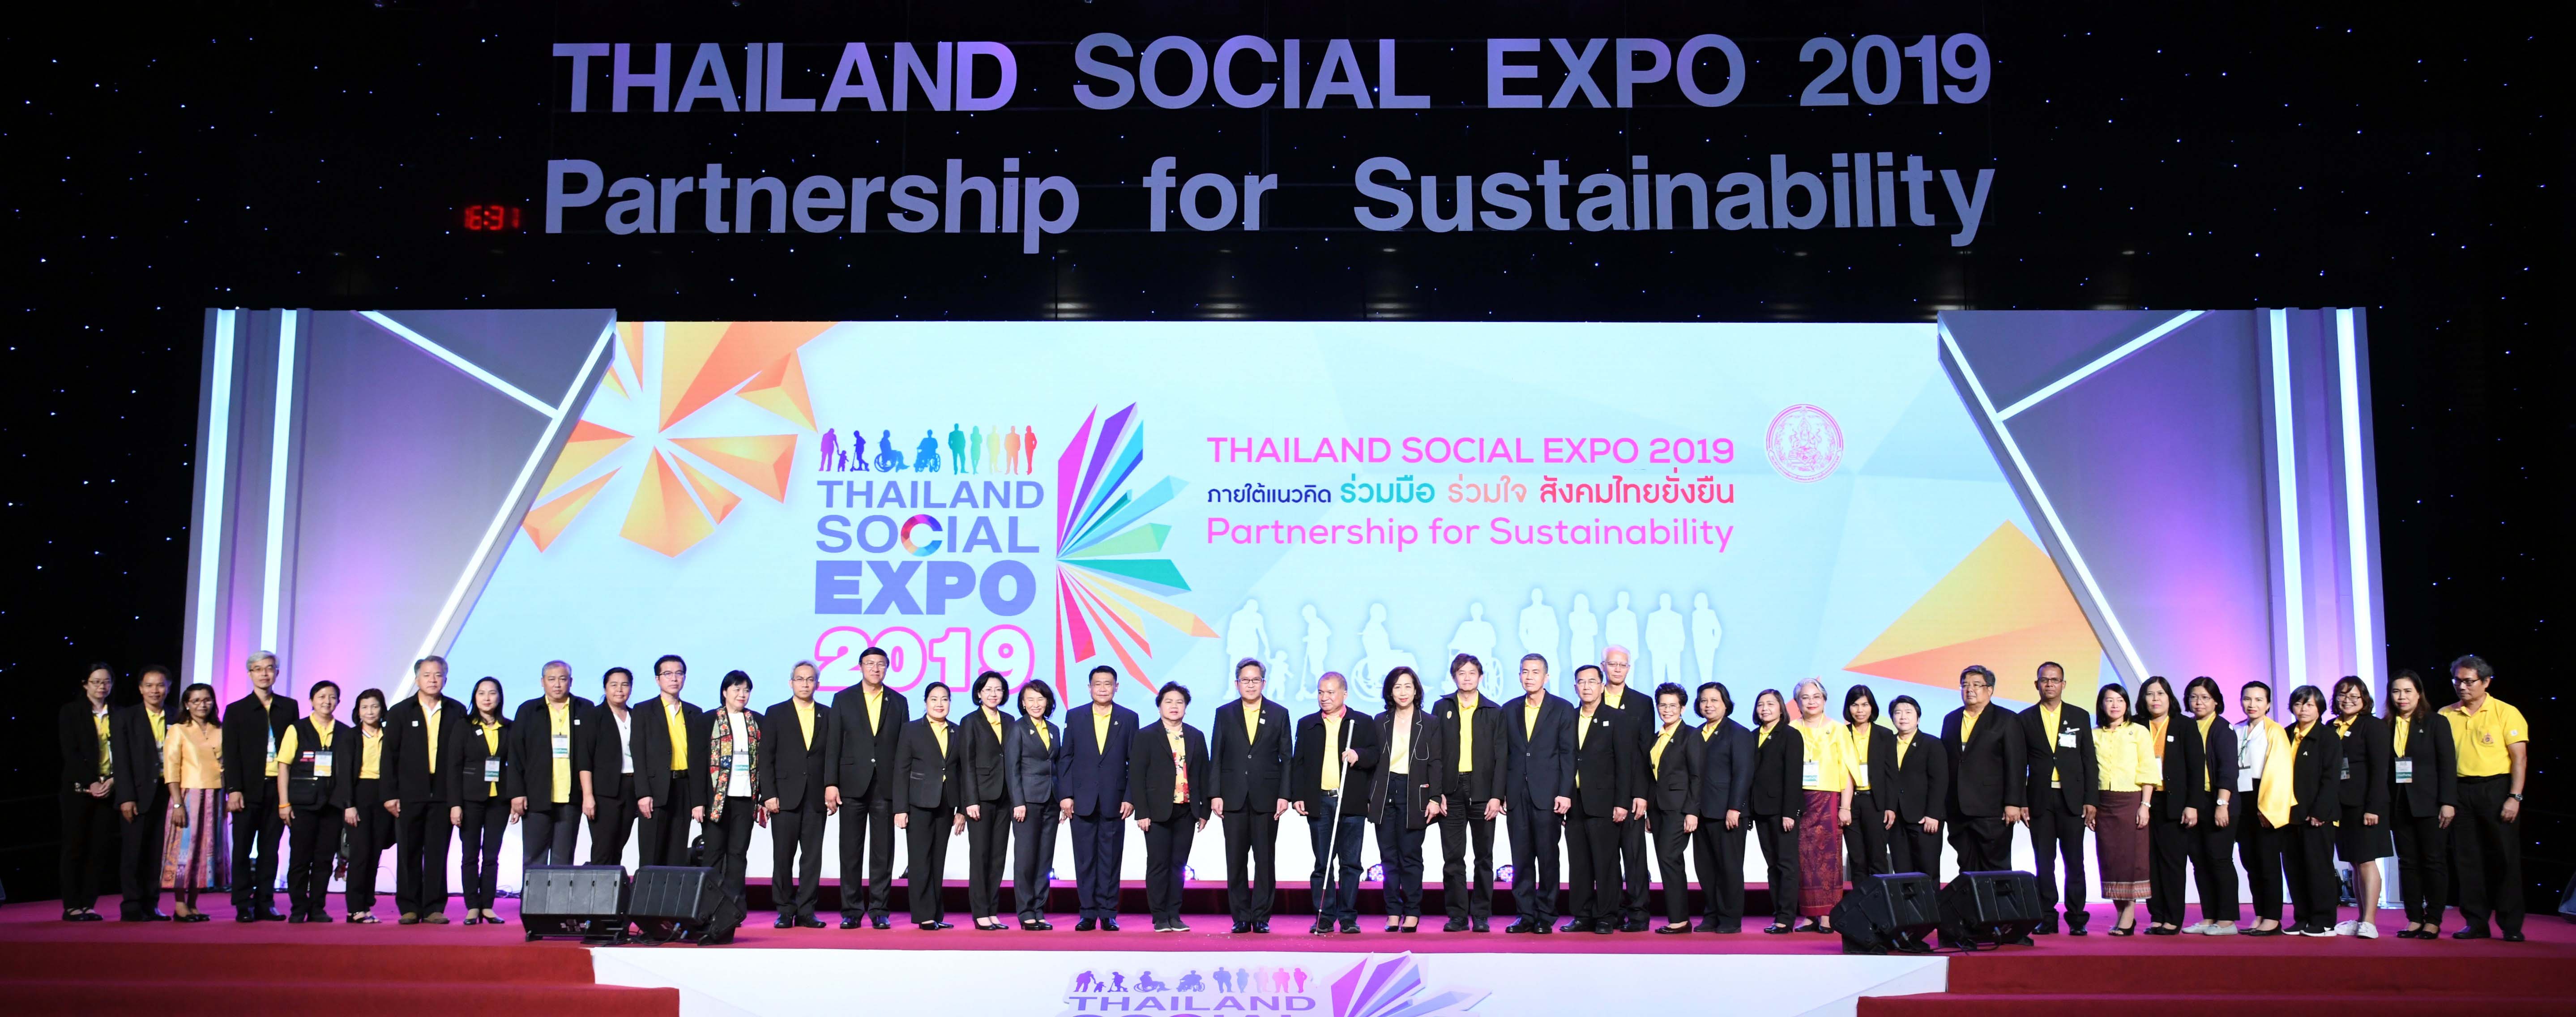 กรมกิจการผู้สูงอายุ เข้าร่วมพิธีปิดงาน “Thailand Social Expo 2019” พร้อมสรุปภาพรวมมหกรรมแสดงผลงานนวัตกรรมด้านสังคมที่ใหญ่ที่สุดของไทย เพื่อคนทุกช่วงวัย 